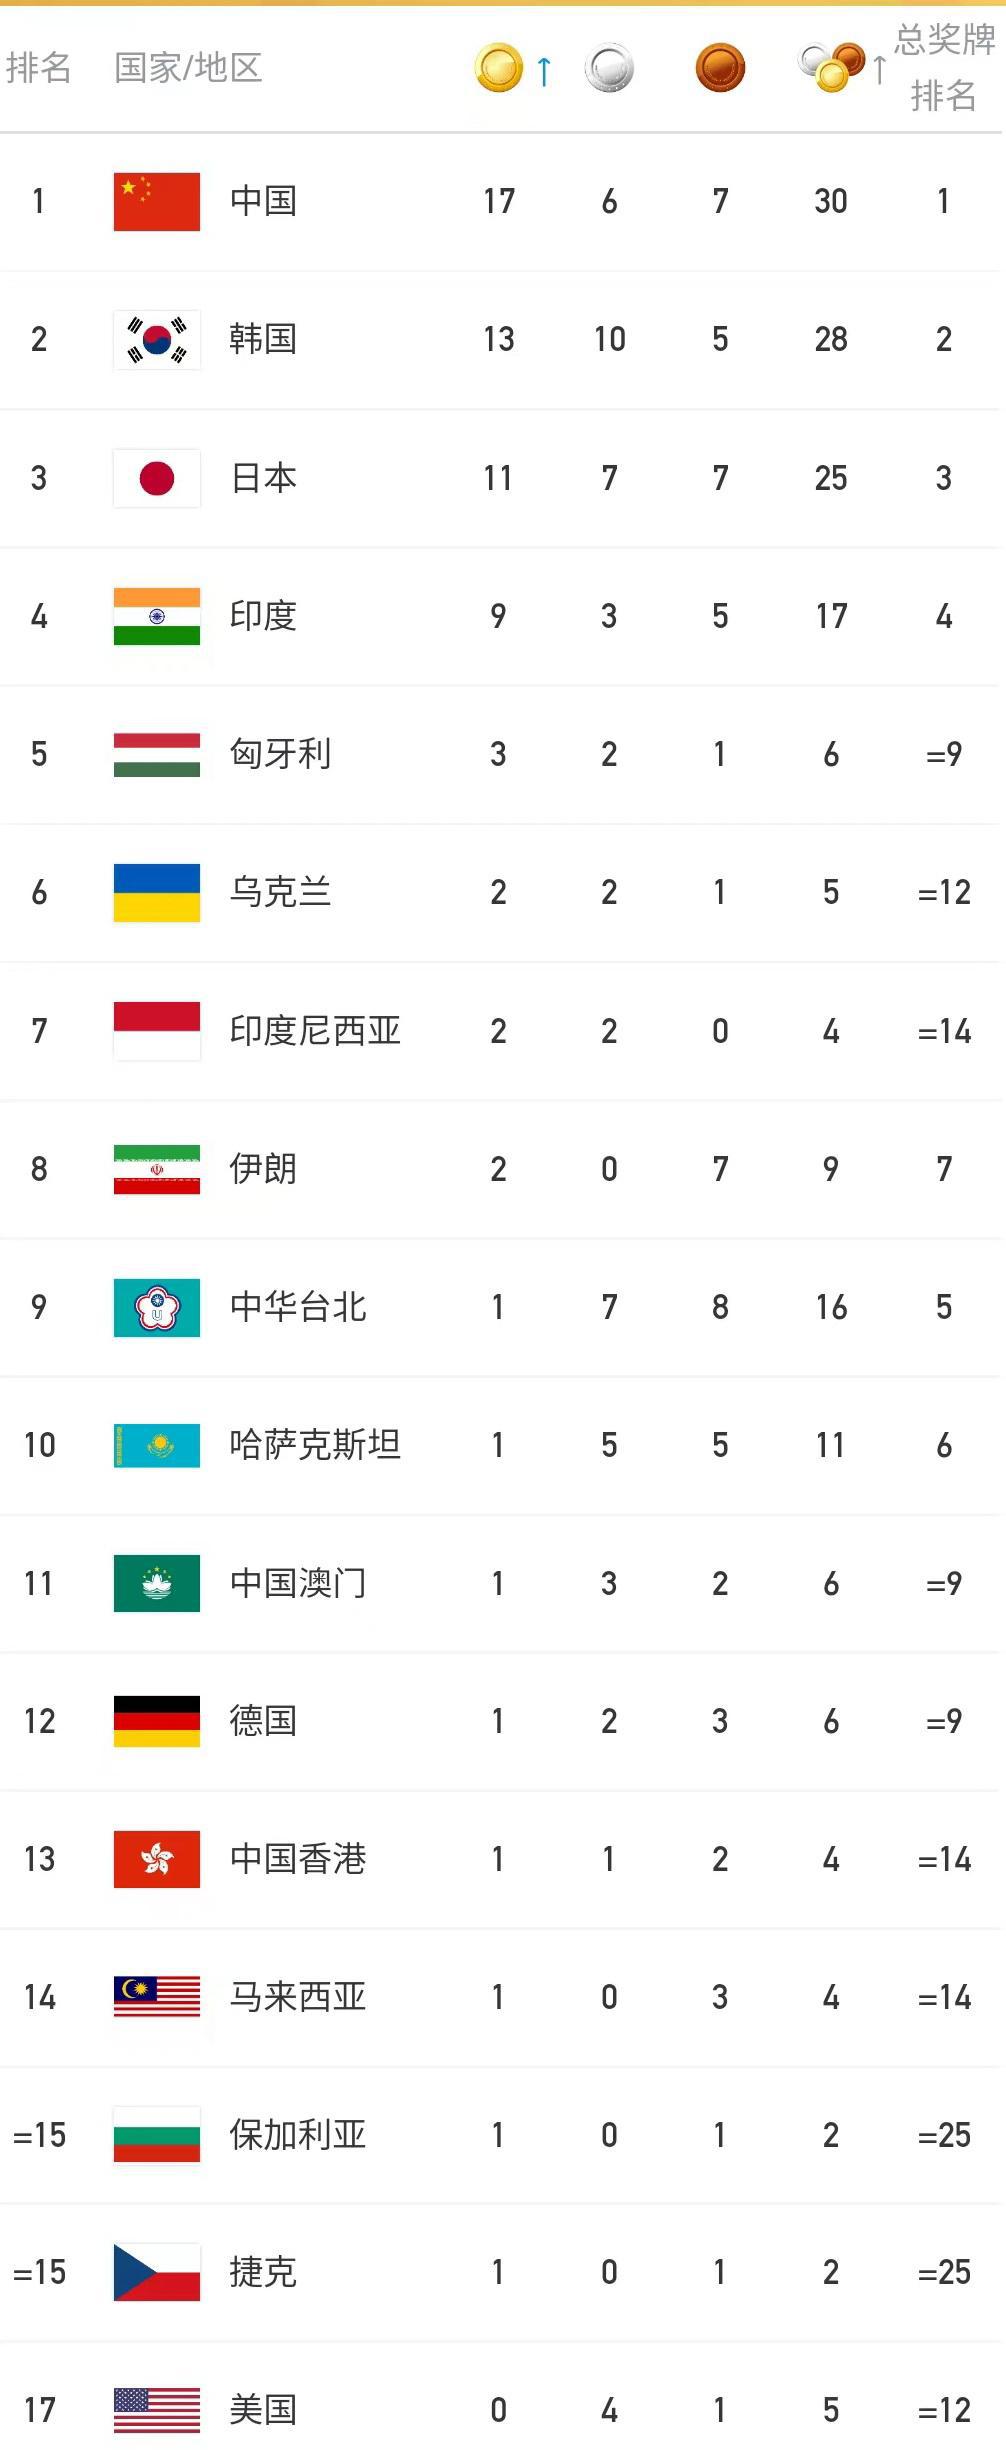 大运会金牌榜，中国继续占据榜首，印度表现抢眼，乌克兰夺得2金(3)